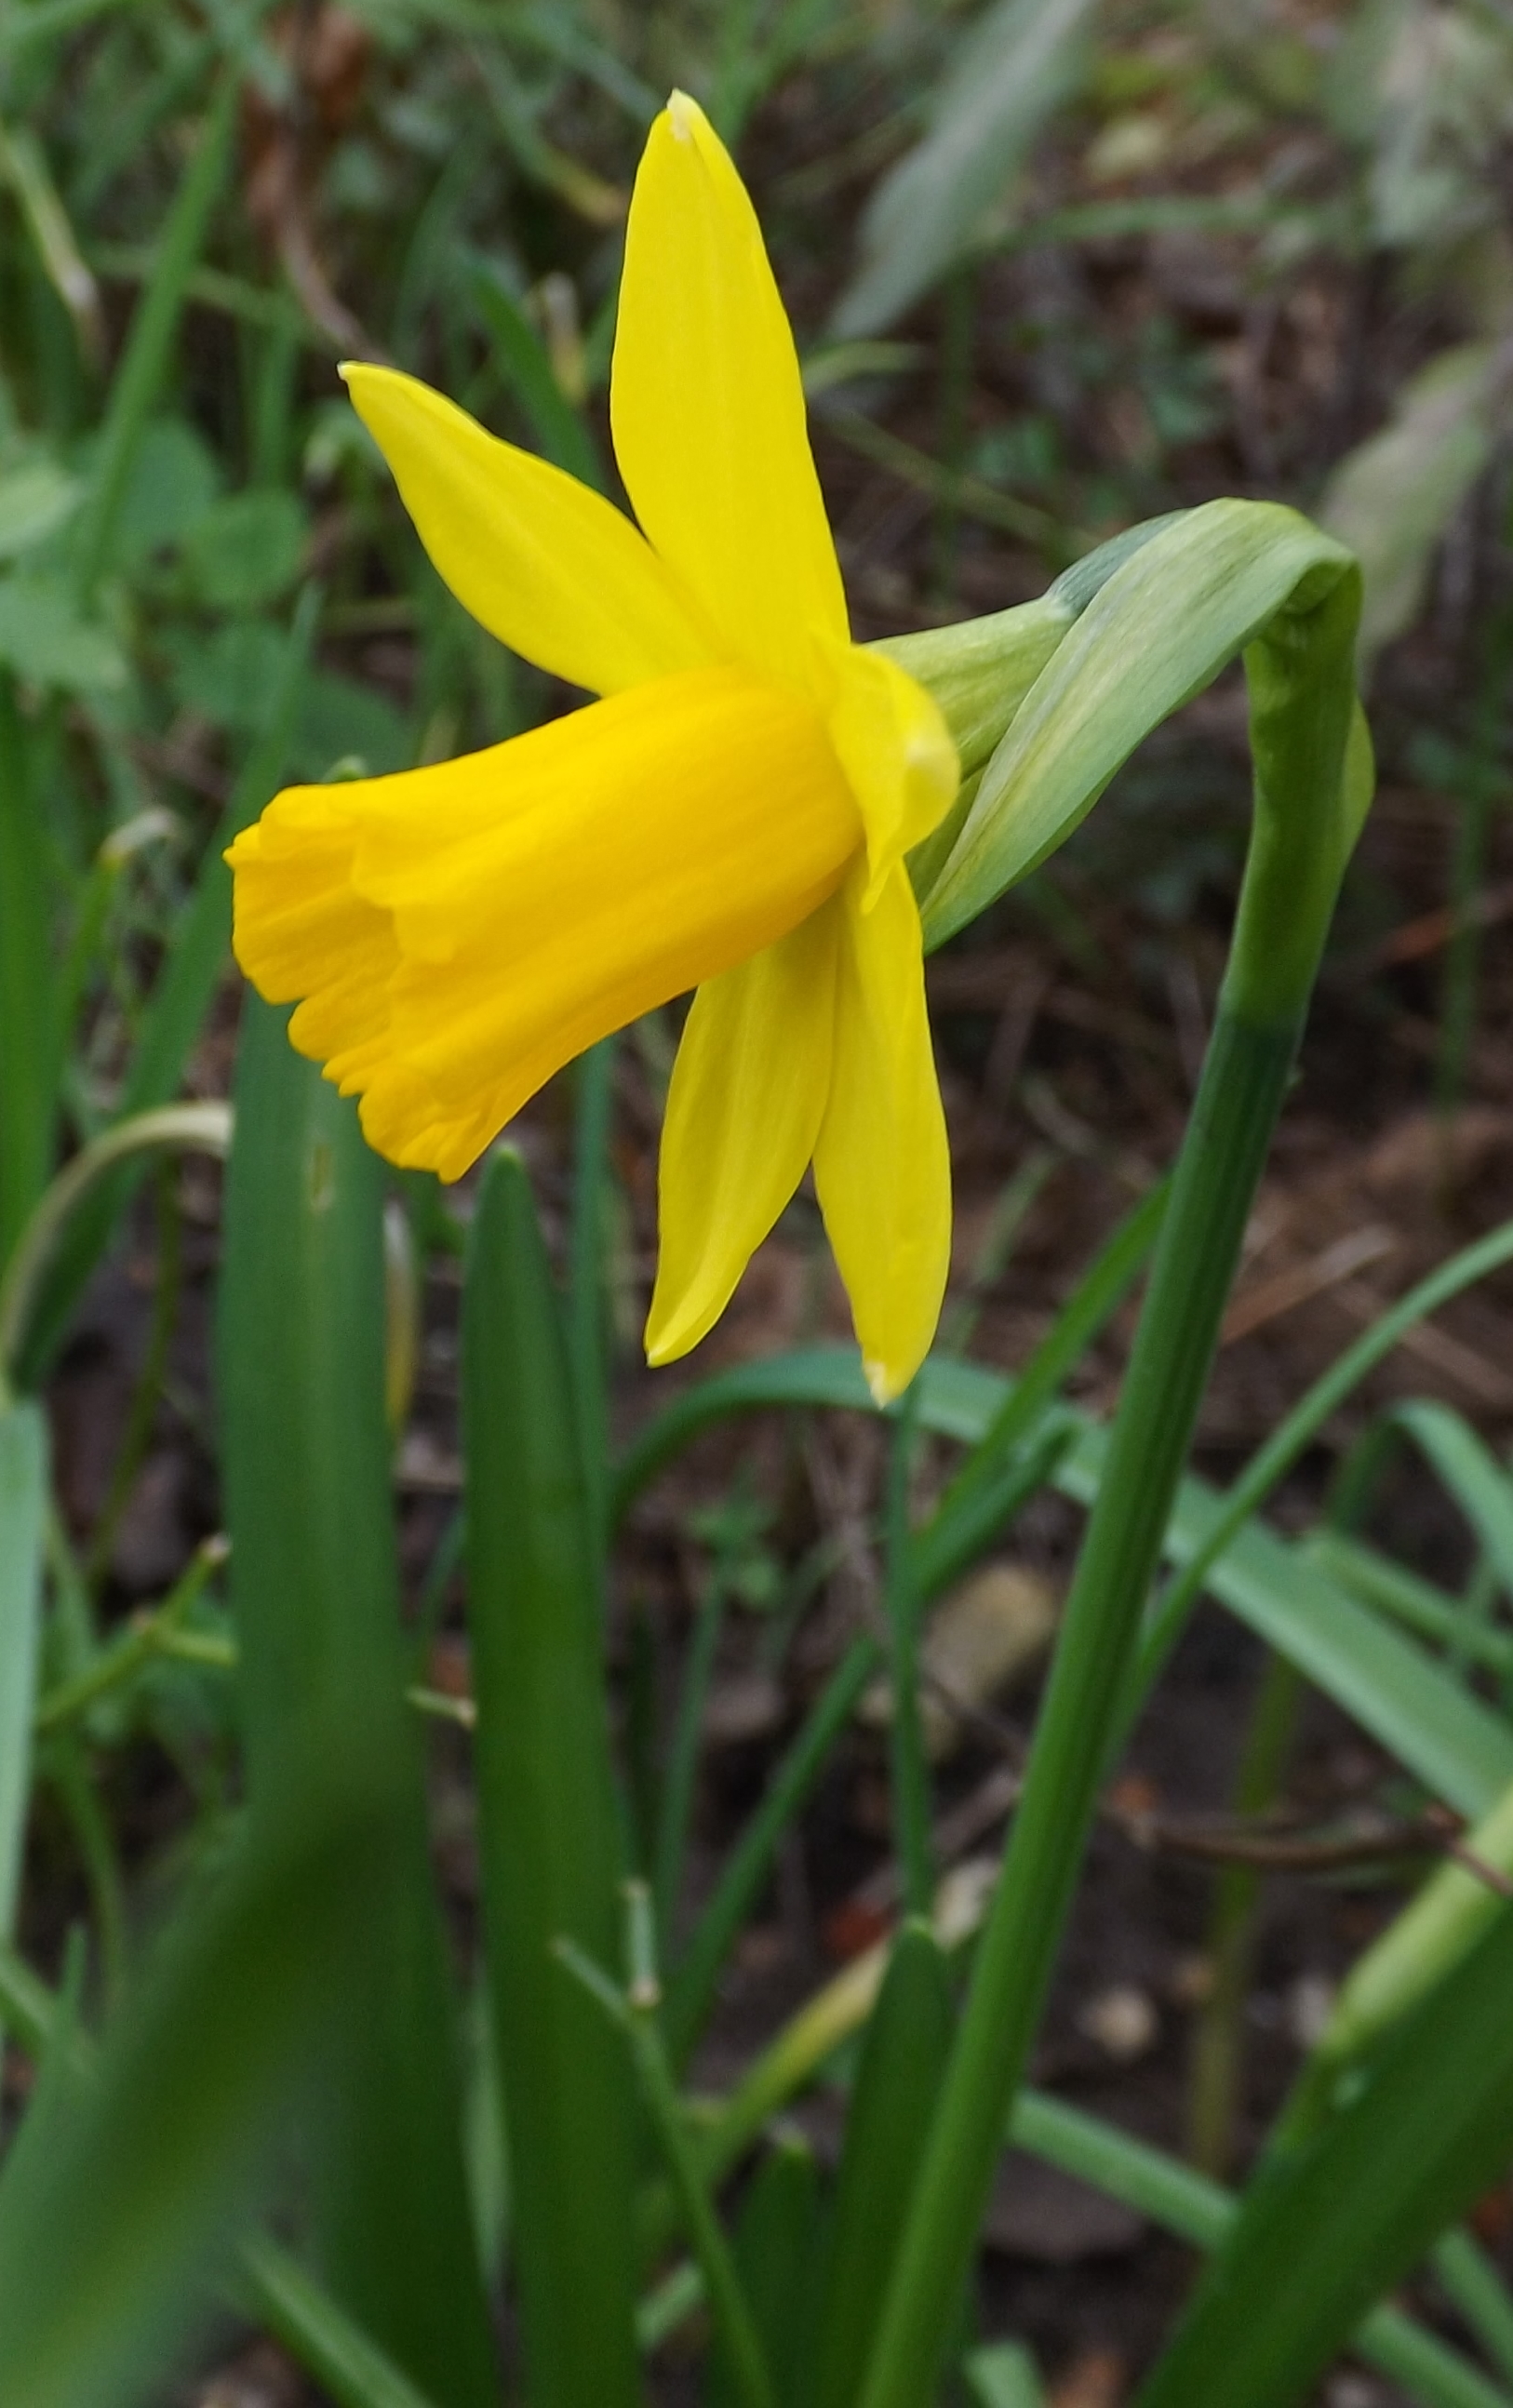 Dwarf Daffodil in flower